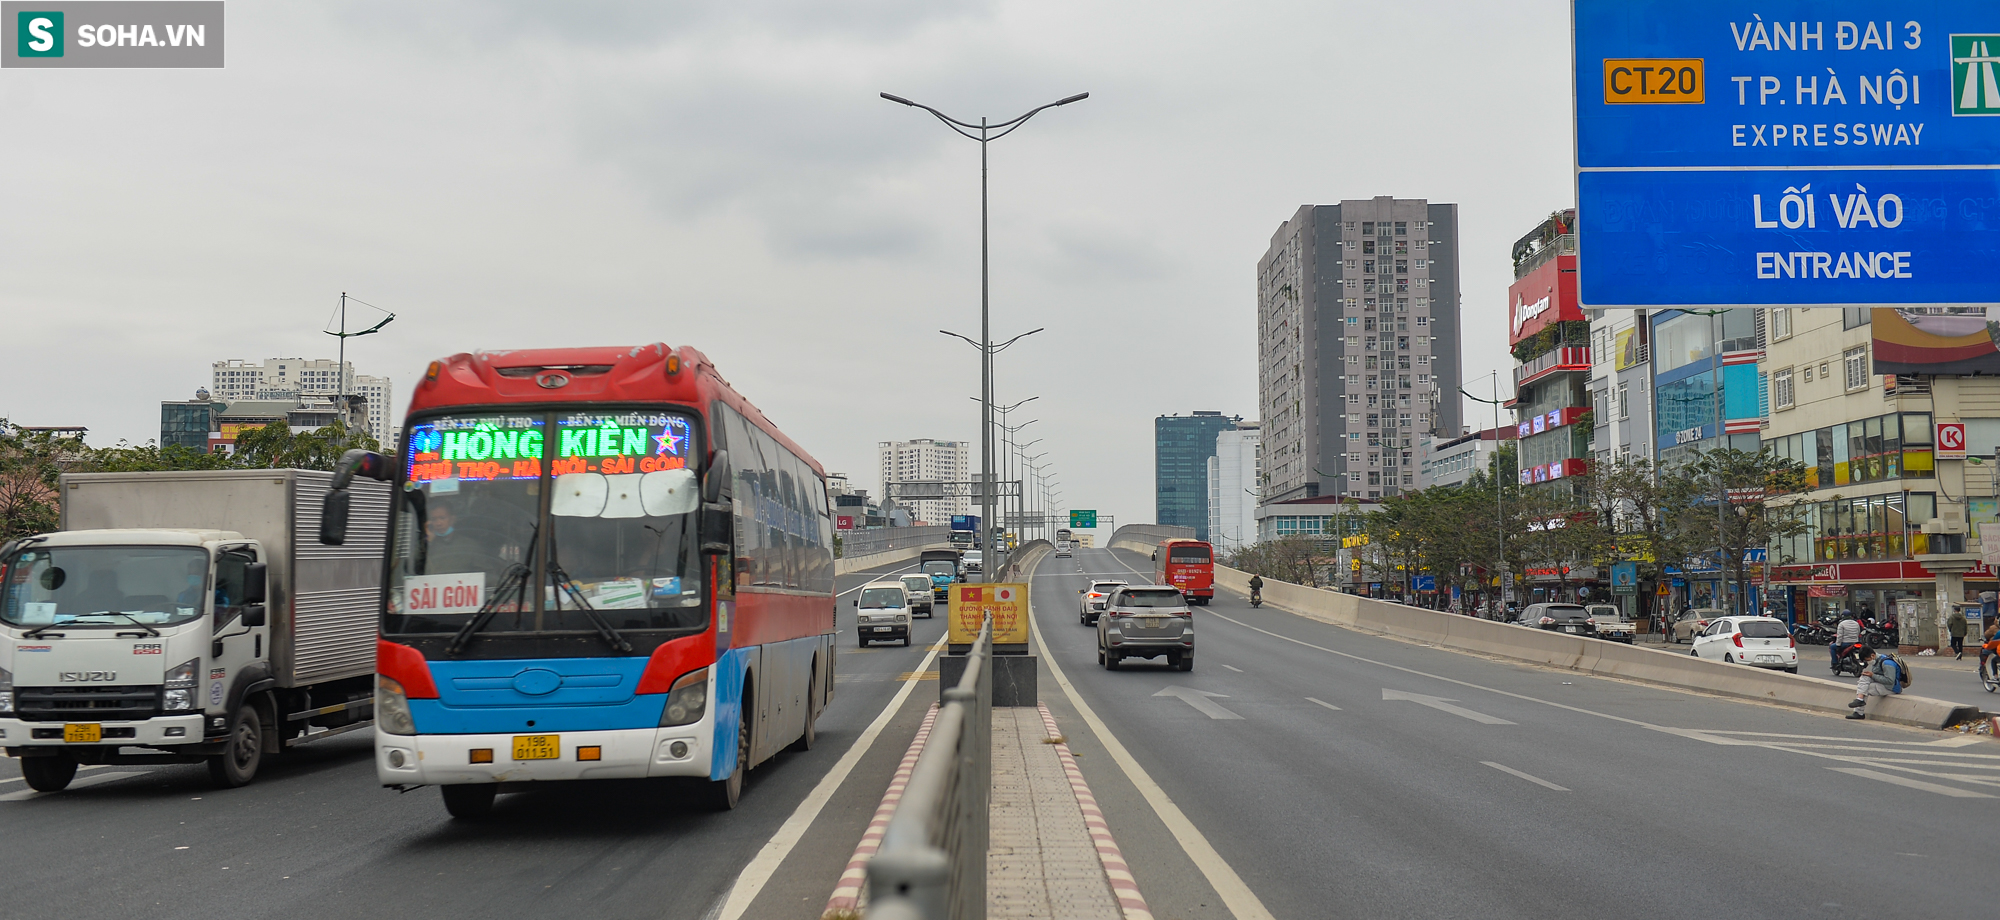 Cận cảnh cao tốc trên cao đầu tiên ở Việt Nam cho xe chạy mát ga tới 100km/h - Ảnh 4.